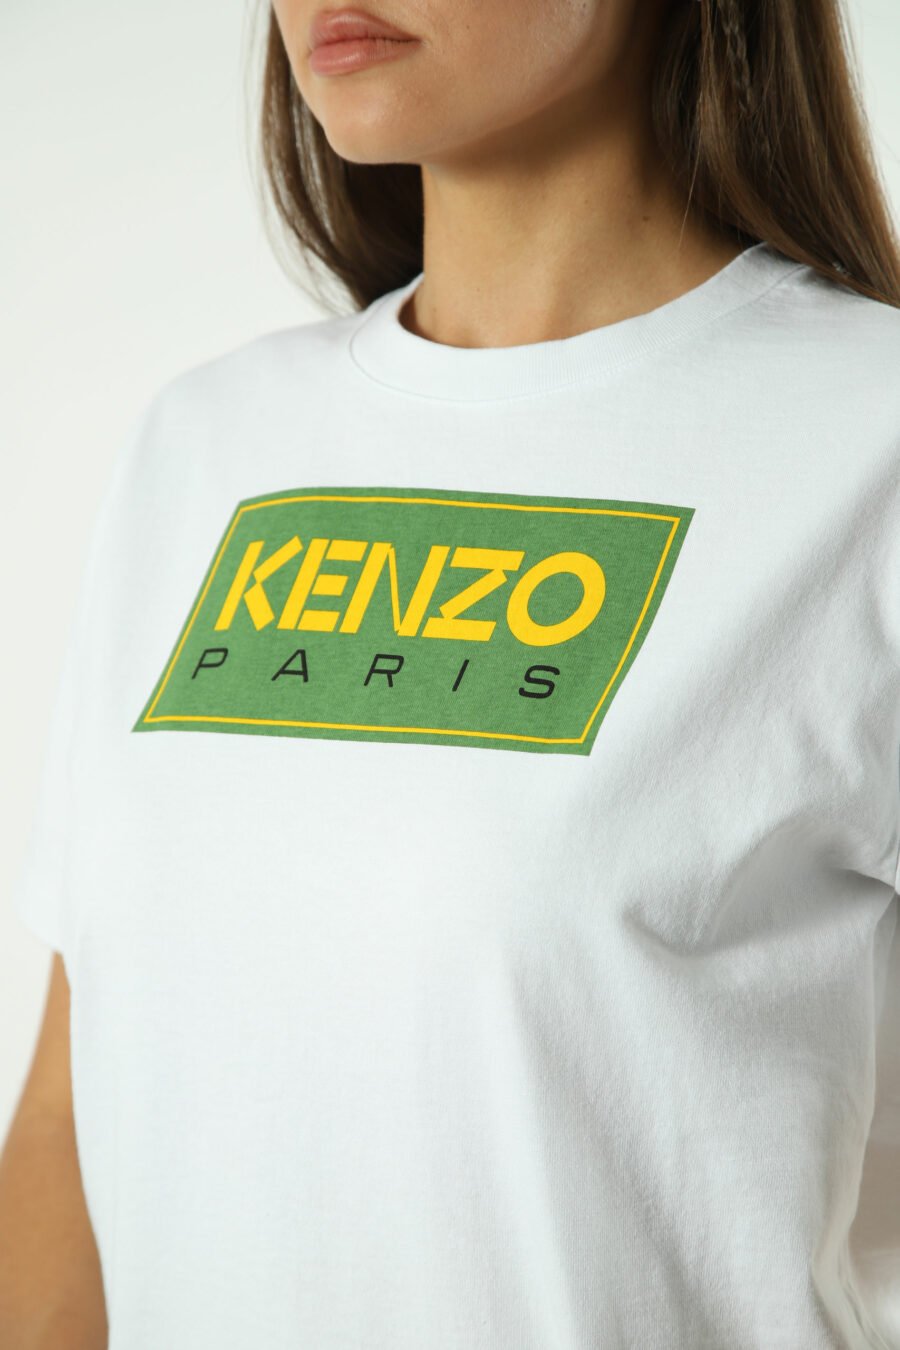 T-shirt weiß mit grünem Maxilogo "paris" - Fotos 1331